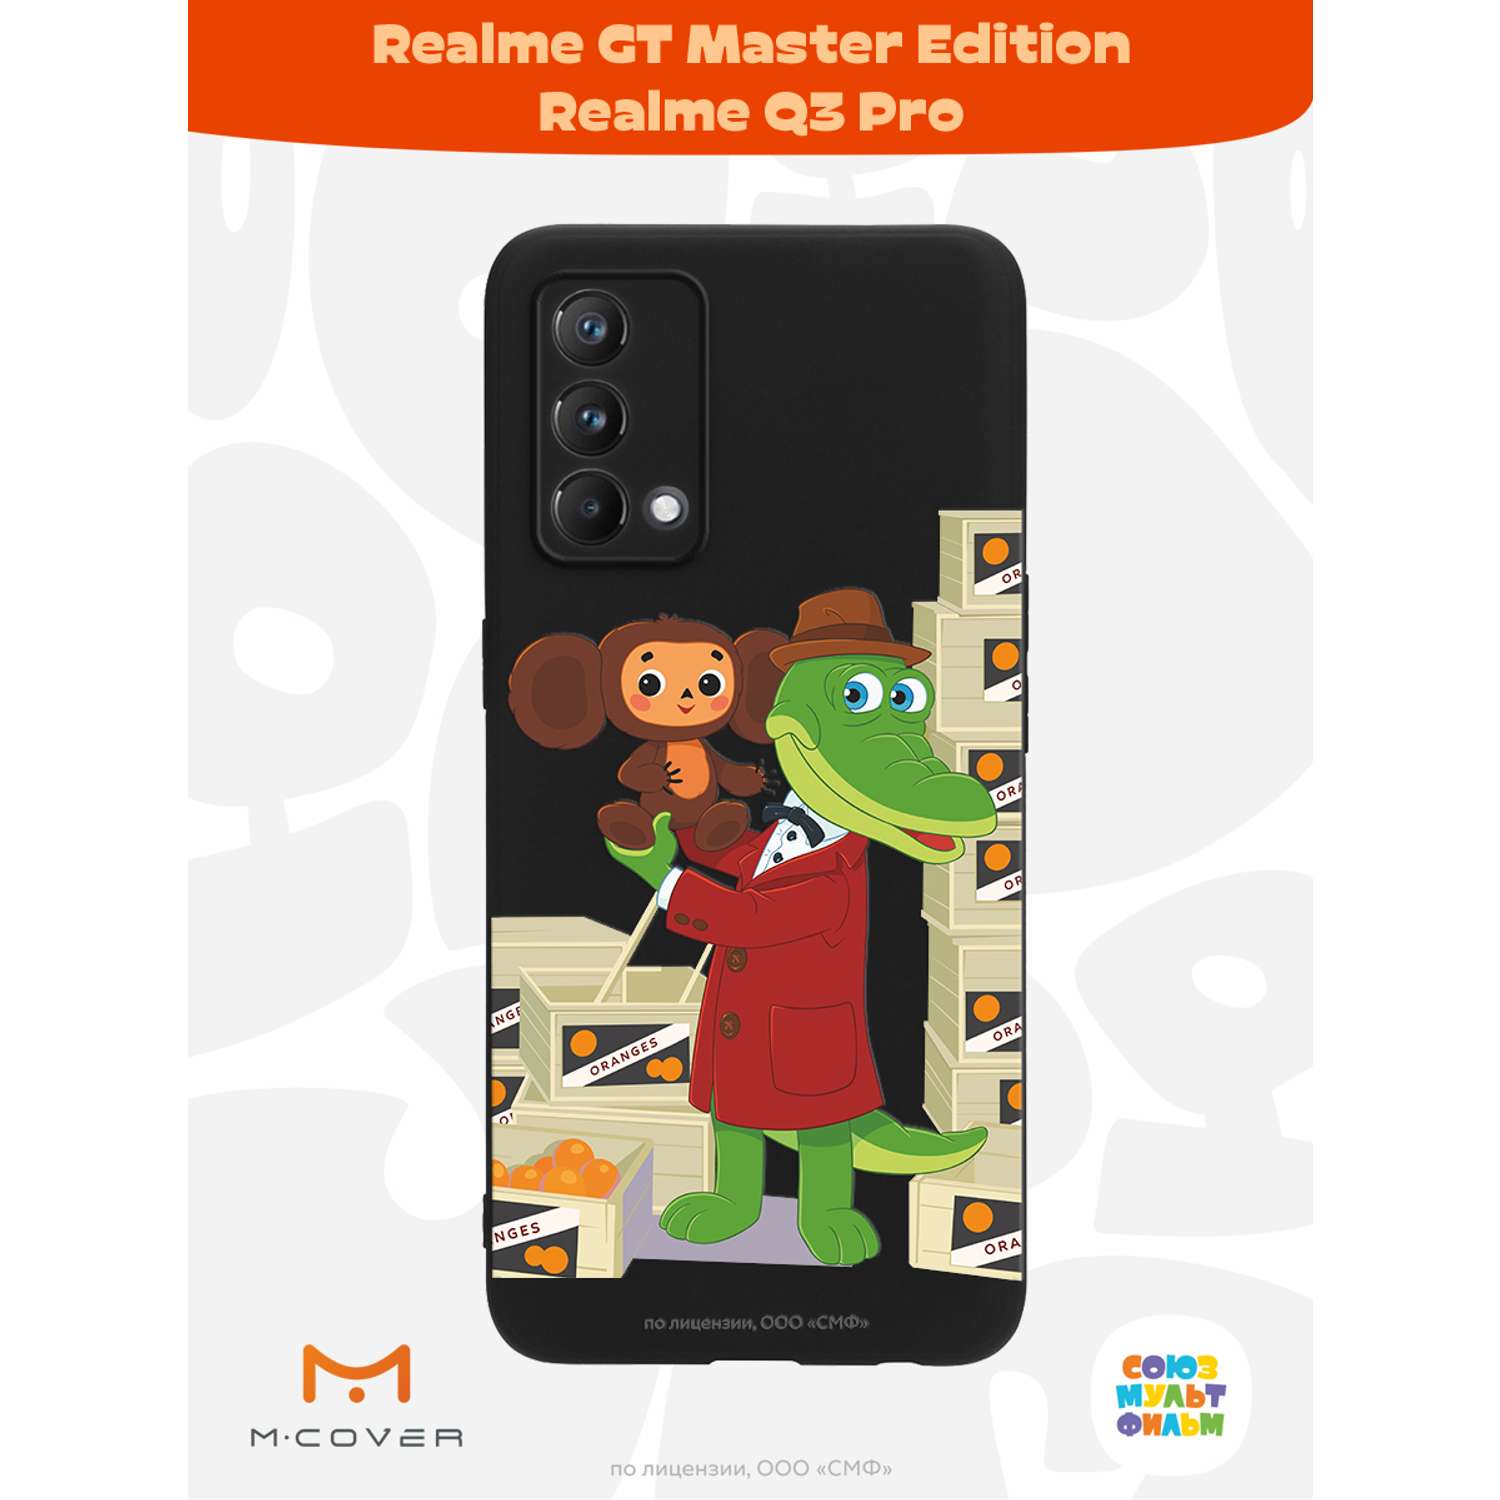 Силиконовый чехол Mcover для смартфона Realme GT Master Edition Q3 Pro Союзмультфильм Ушастая находка - фото 2